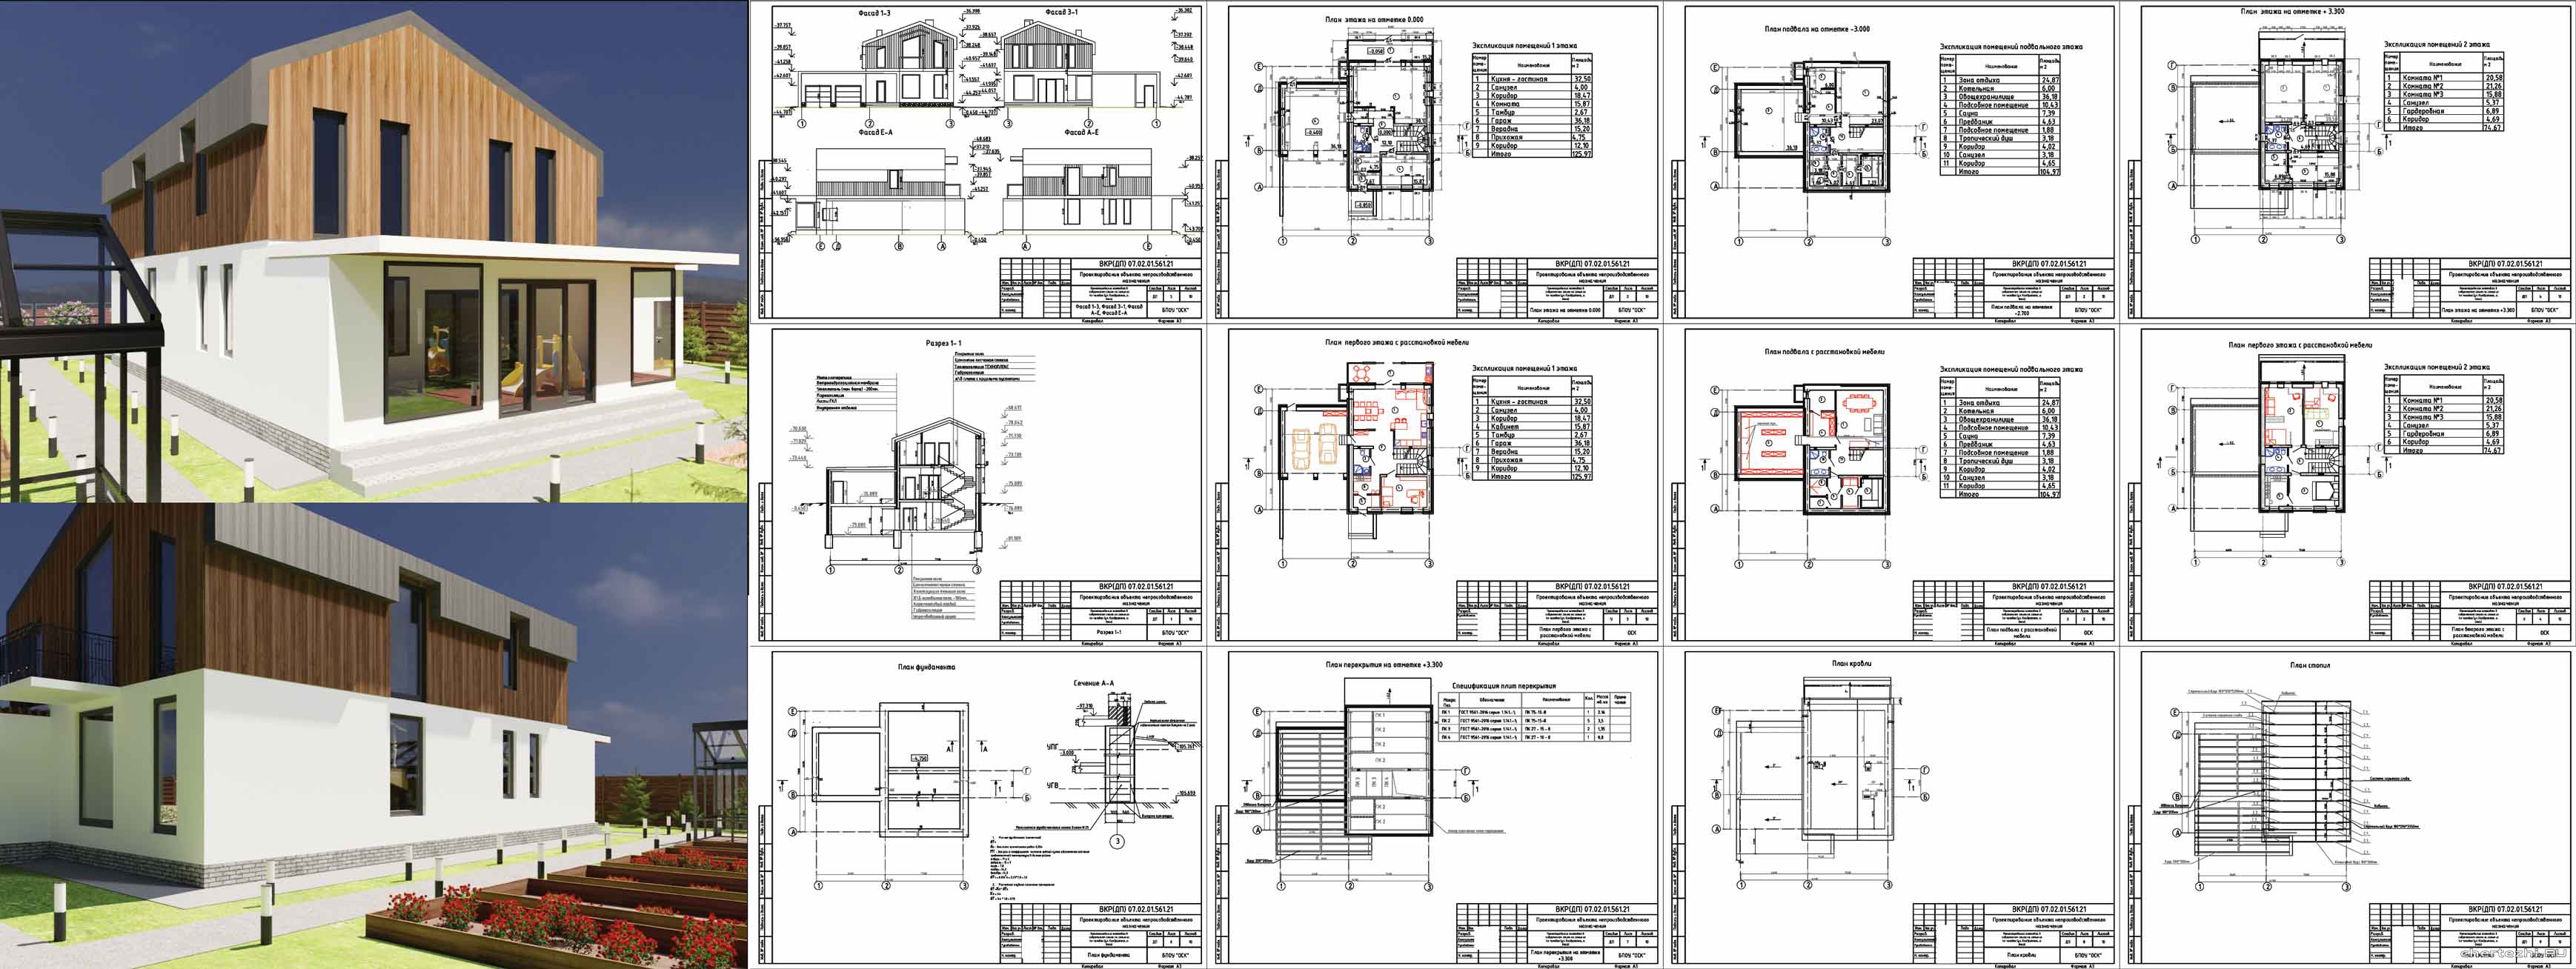 Дипломный проект (колледж) - 2-х этажный коттедж в современном стиле на семью из 4х человек 14,1 х 11,6 м ул. Кондратюка в г. Омск